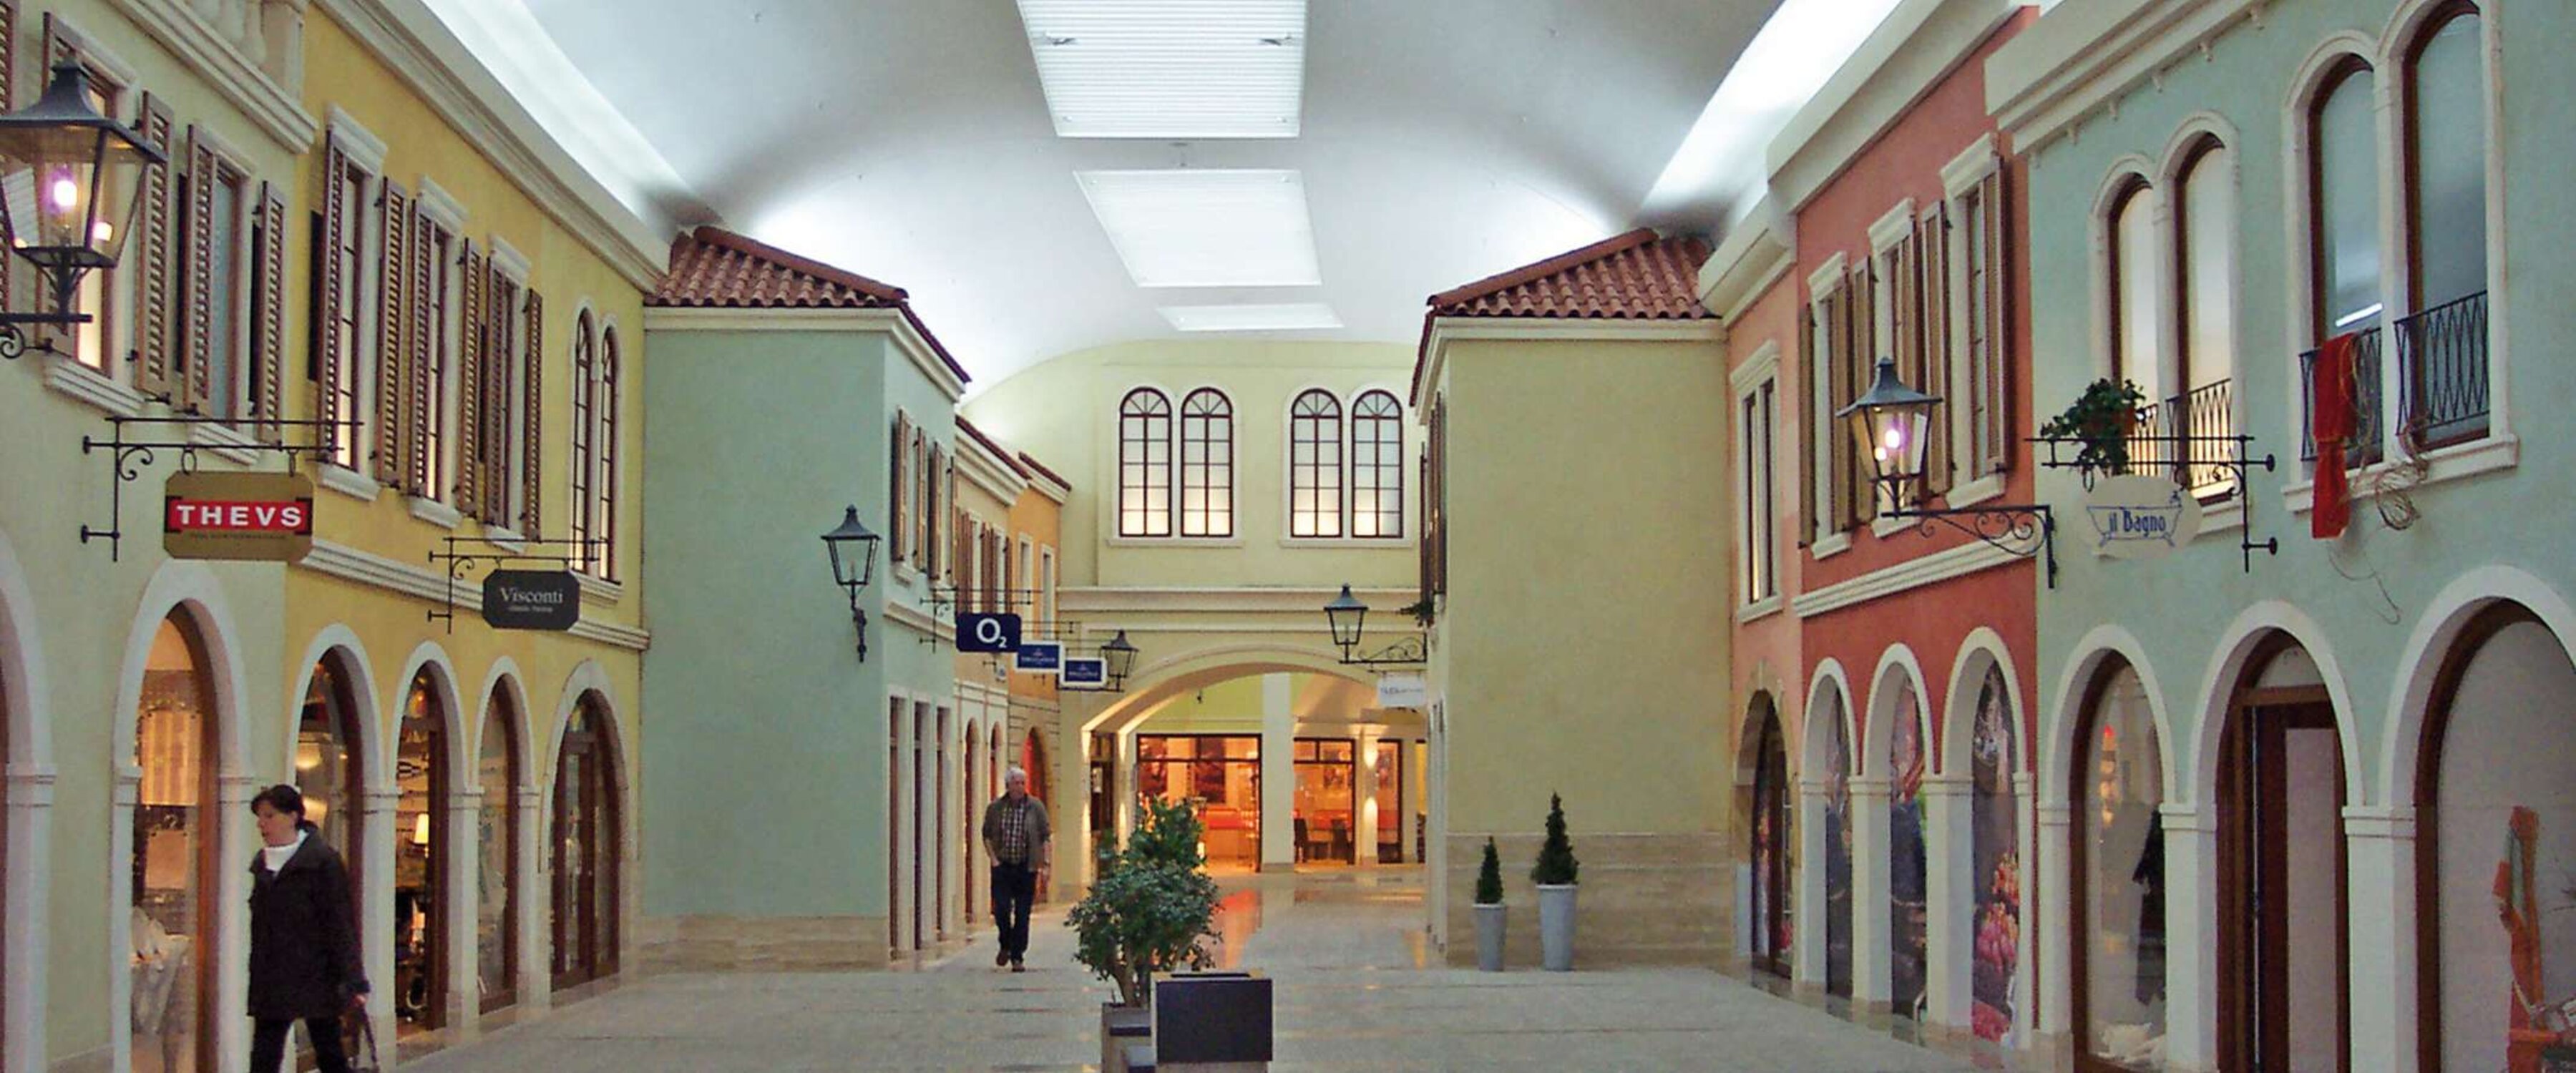 Mediterraneo | Bremerhaven • Die Einkaufsstraße wird in einem Oval durch das Gebäude geführt - die Lichtbänder passen sich diesem Verlauf perfekt an durch eine sehr kleine polygonale Teilung der Lichtbandtragkonstruktion.